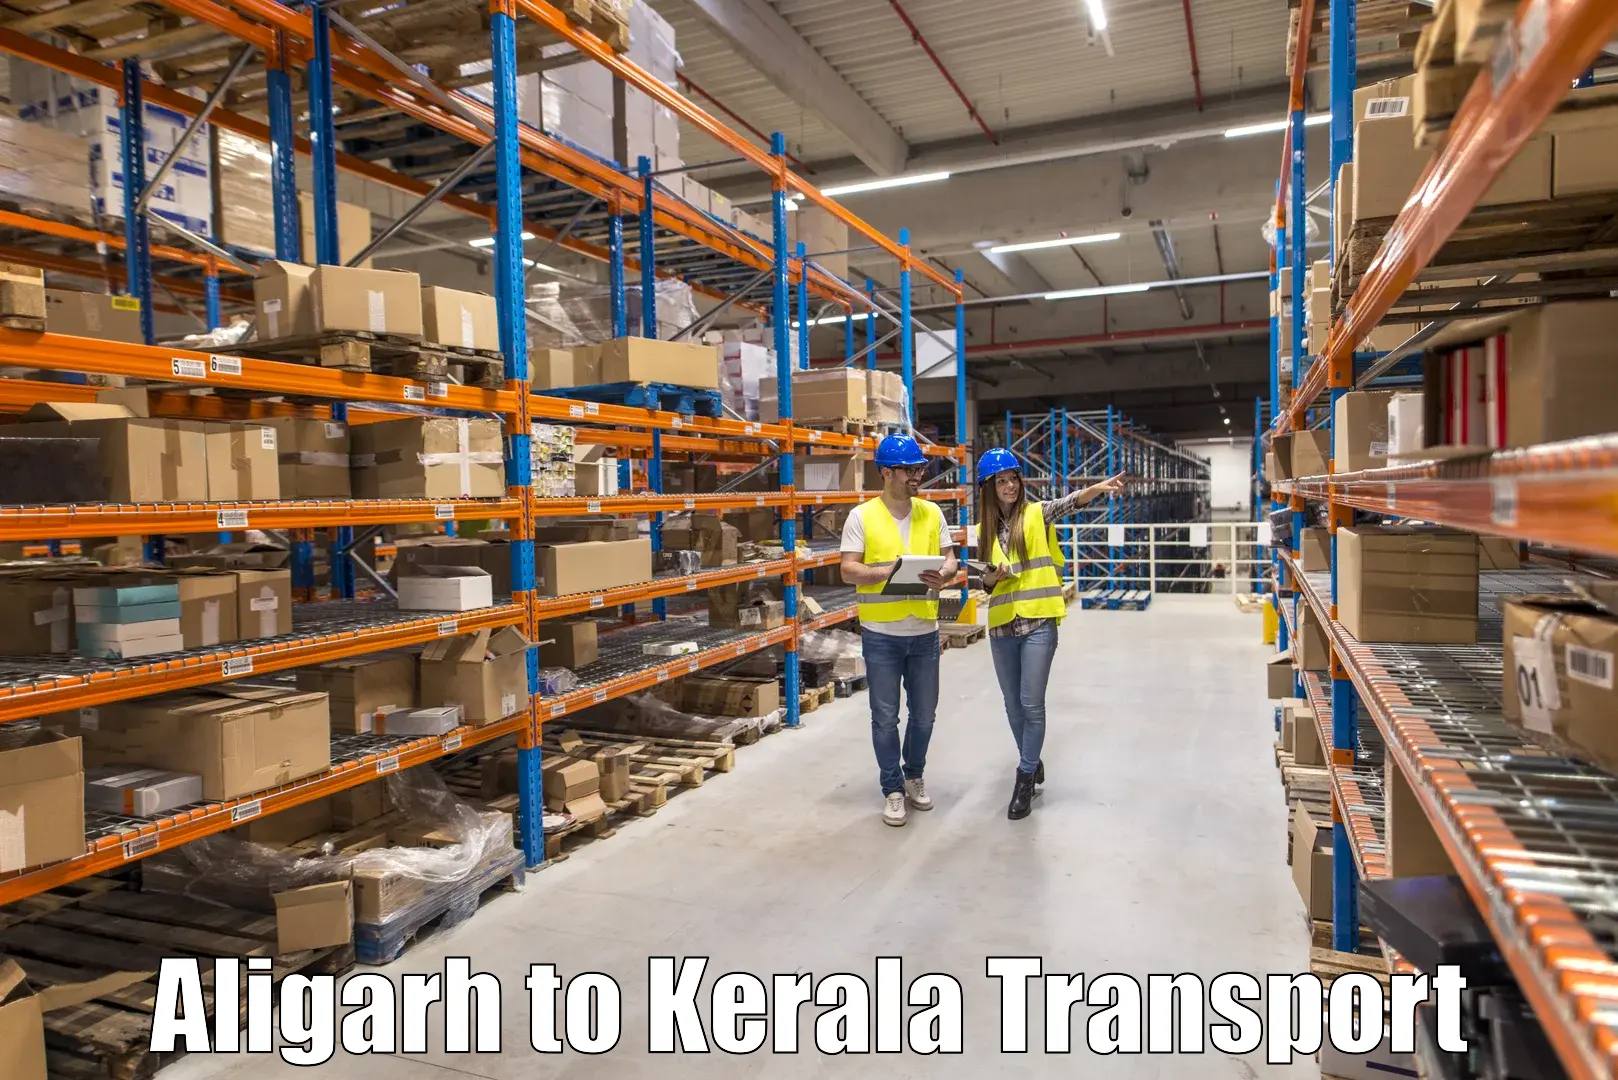 Nearest transport service Aligarh to Kozhikode